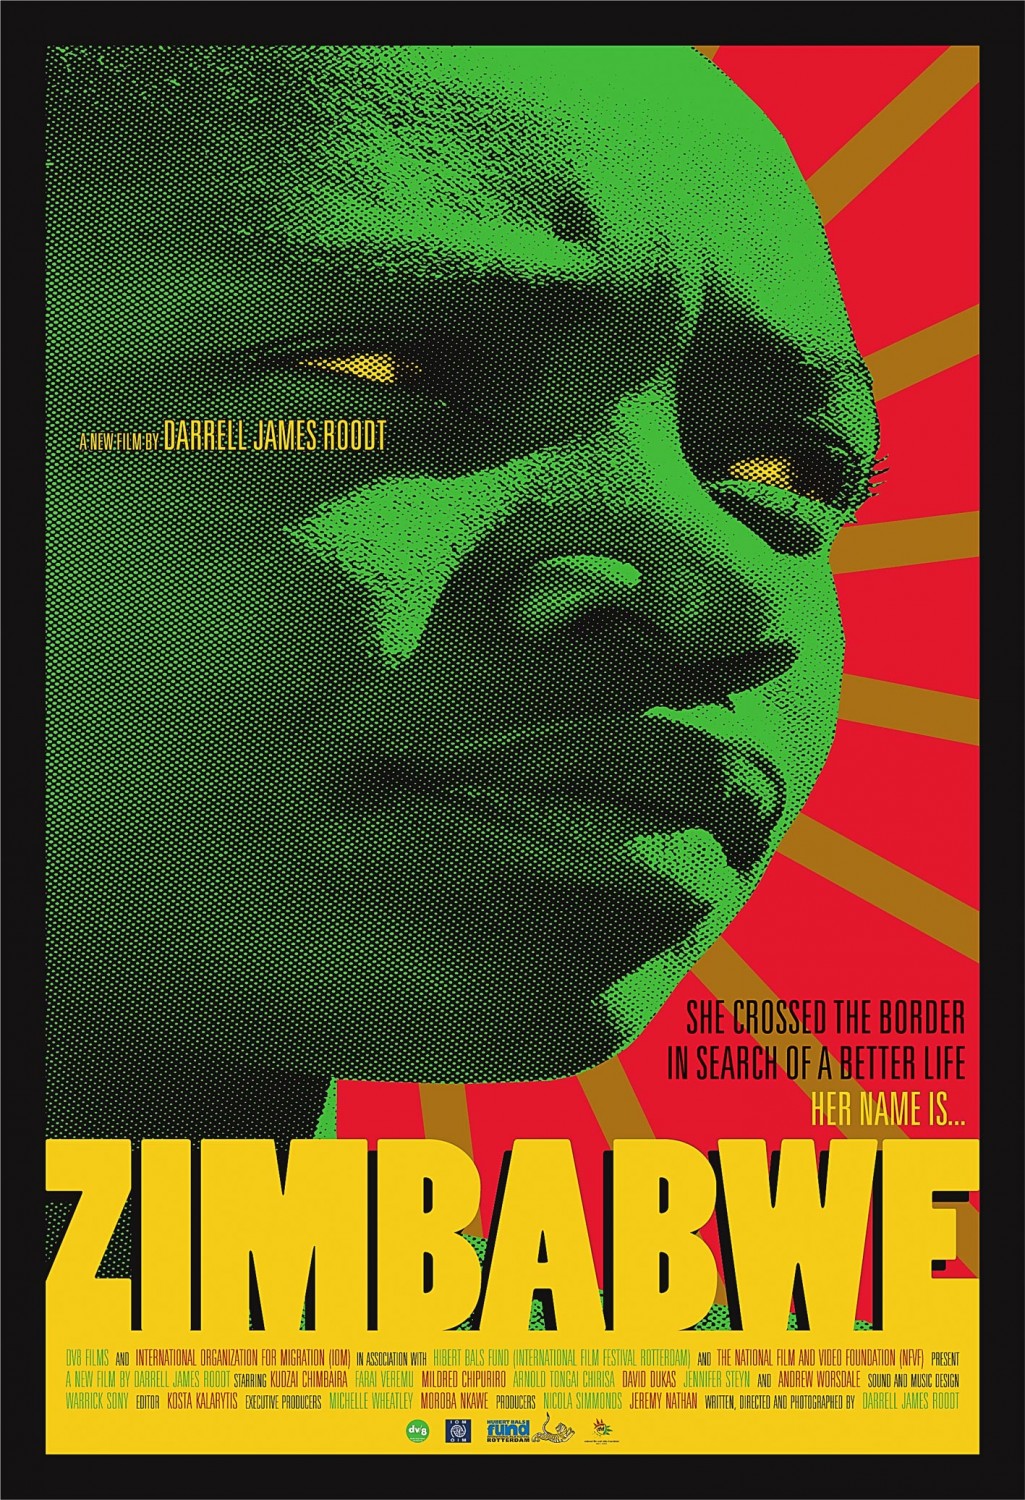 Extra Large Movie Poster Image for Zimbabwe 